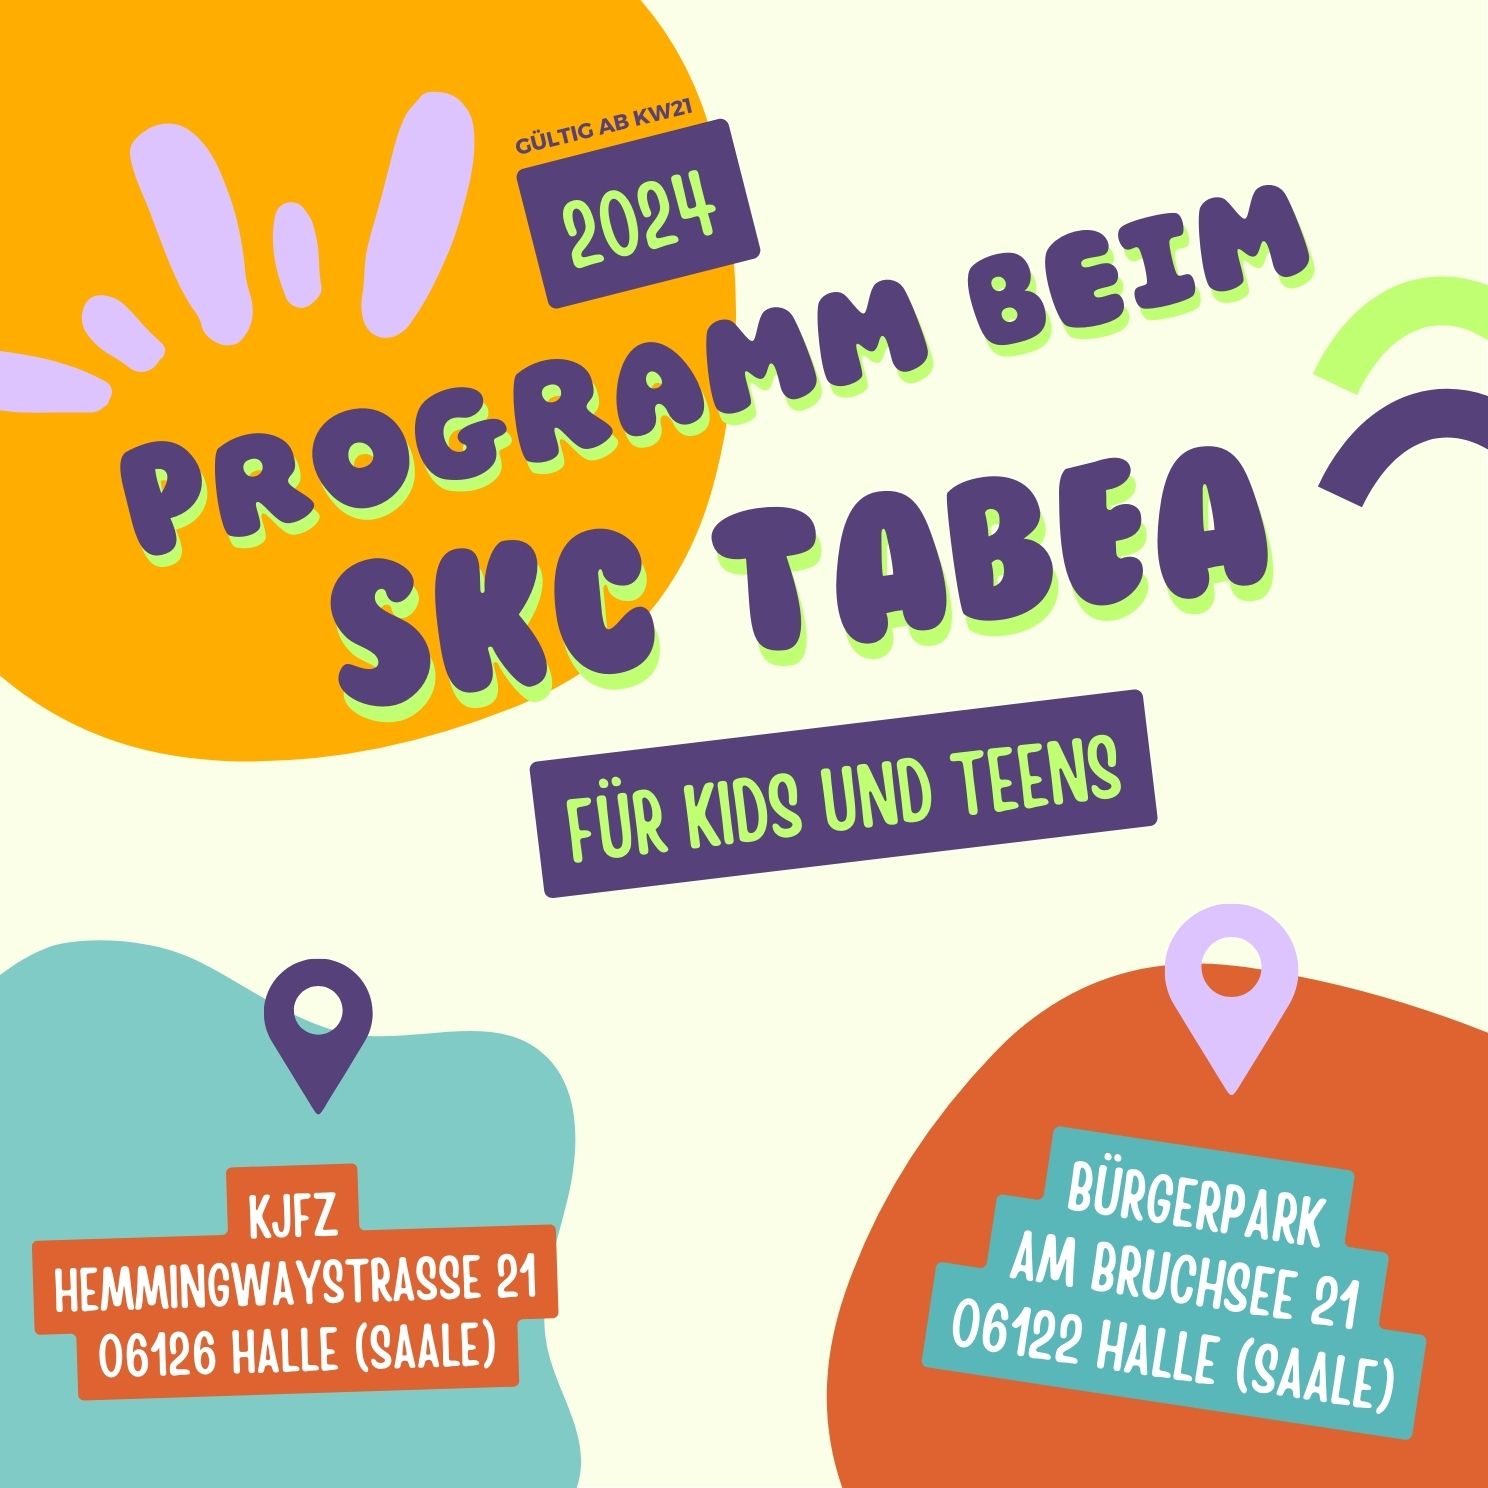 Du betrachtest gerade Kinder- und Jugendprogramm beim SKC TABEA